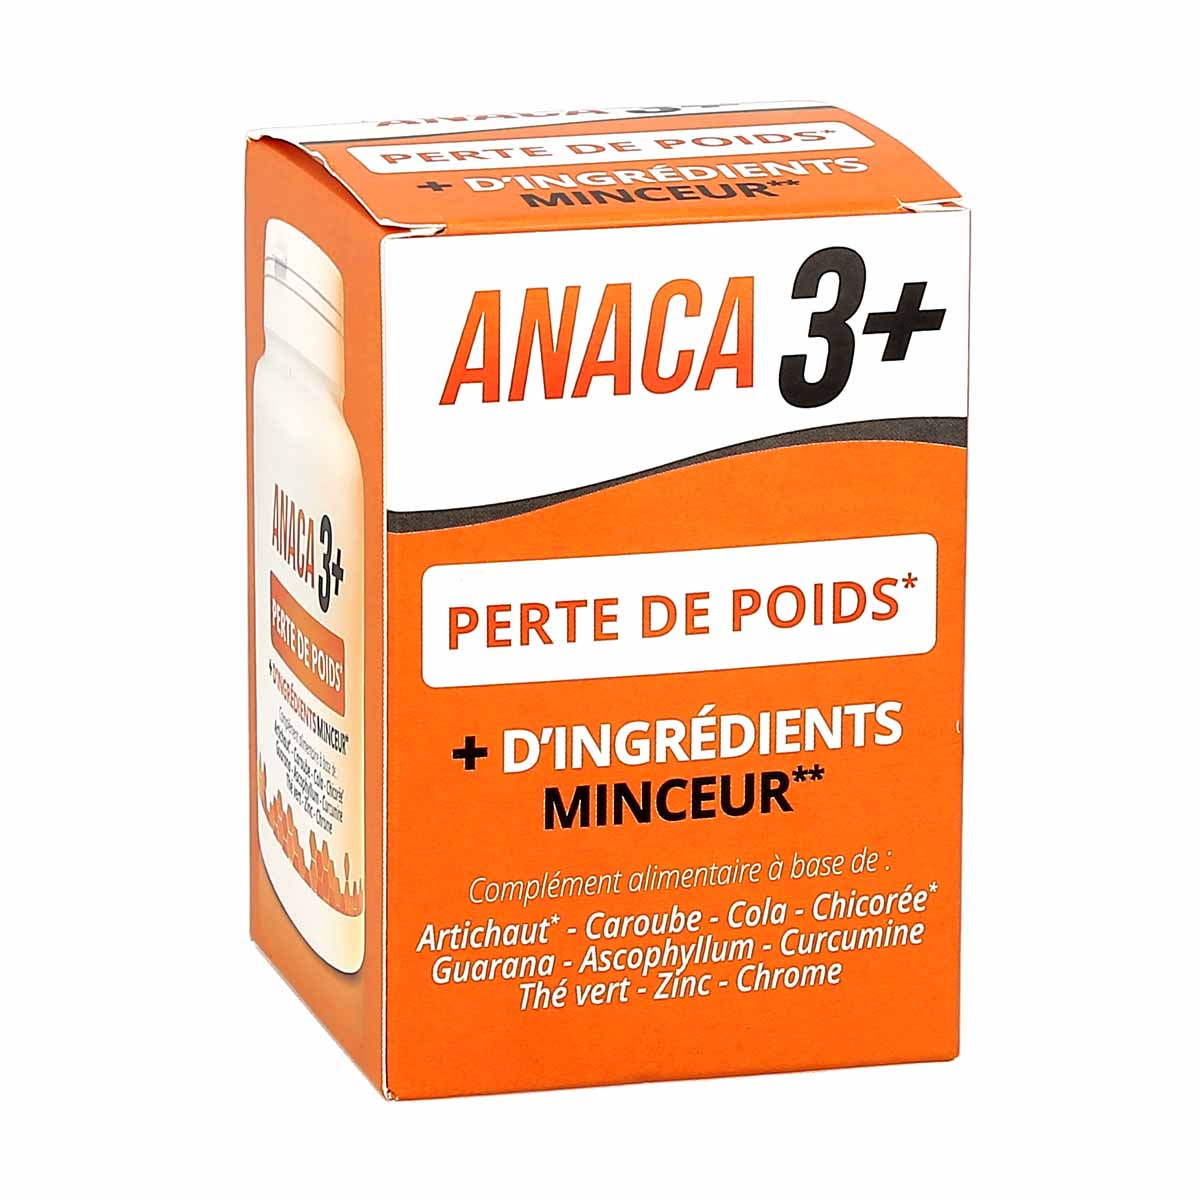 Anaca 3+ Perte de Poids, + d'ingrédients Minceur, 1 boite de 120 gélules